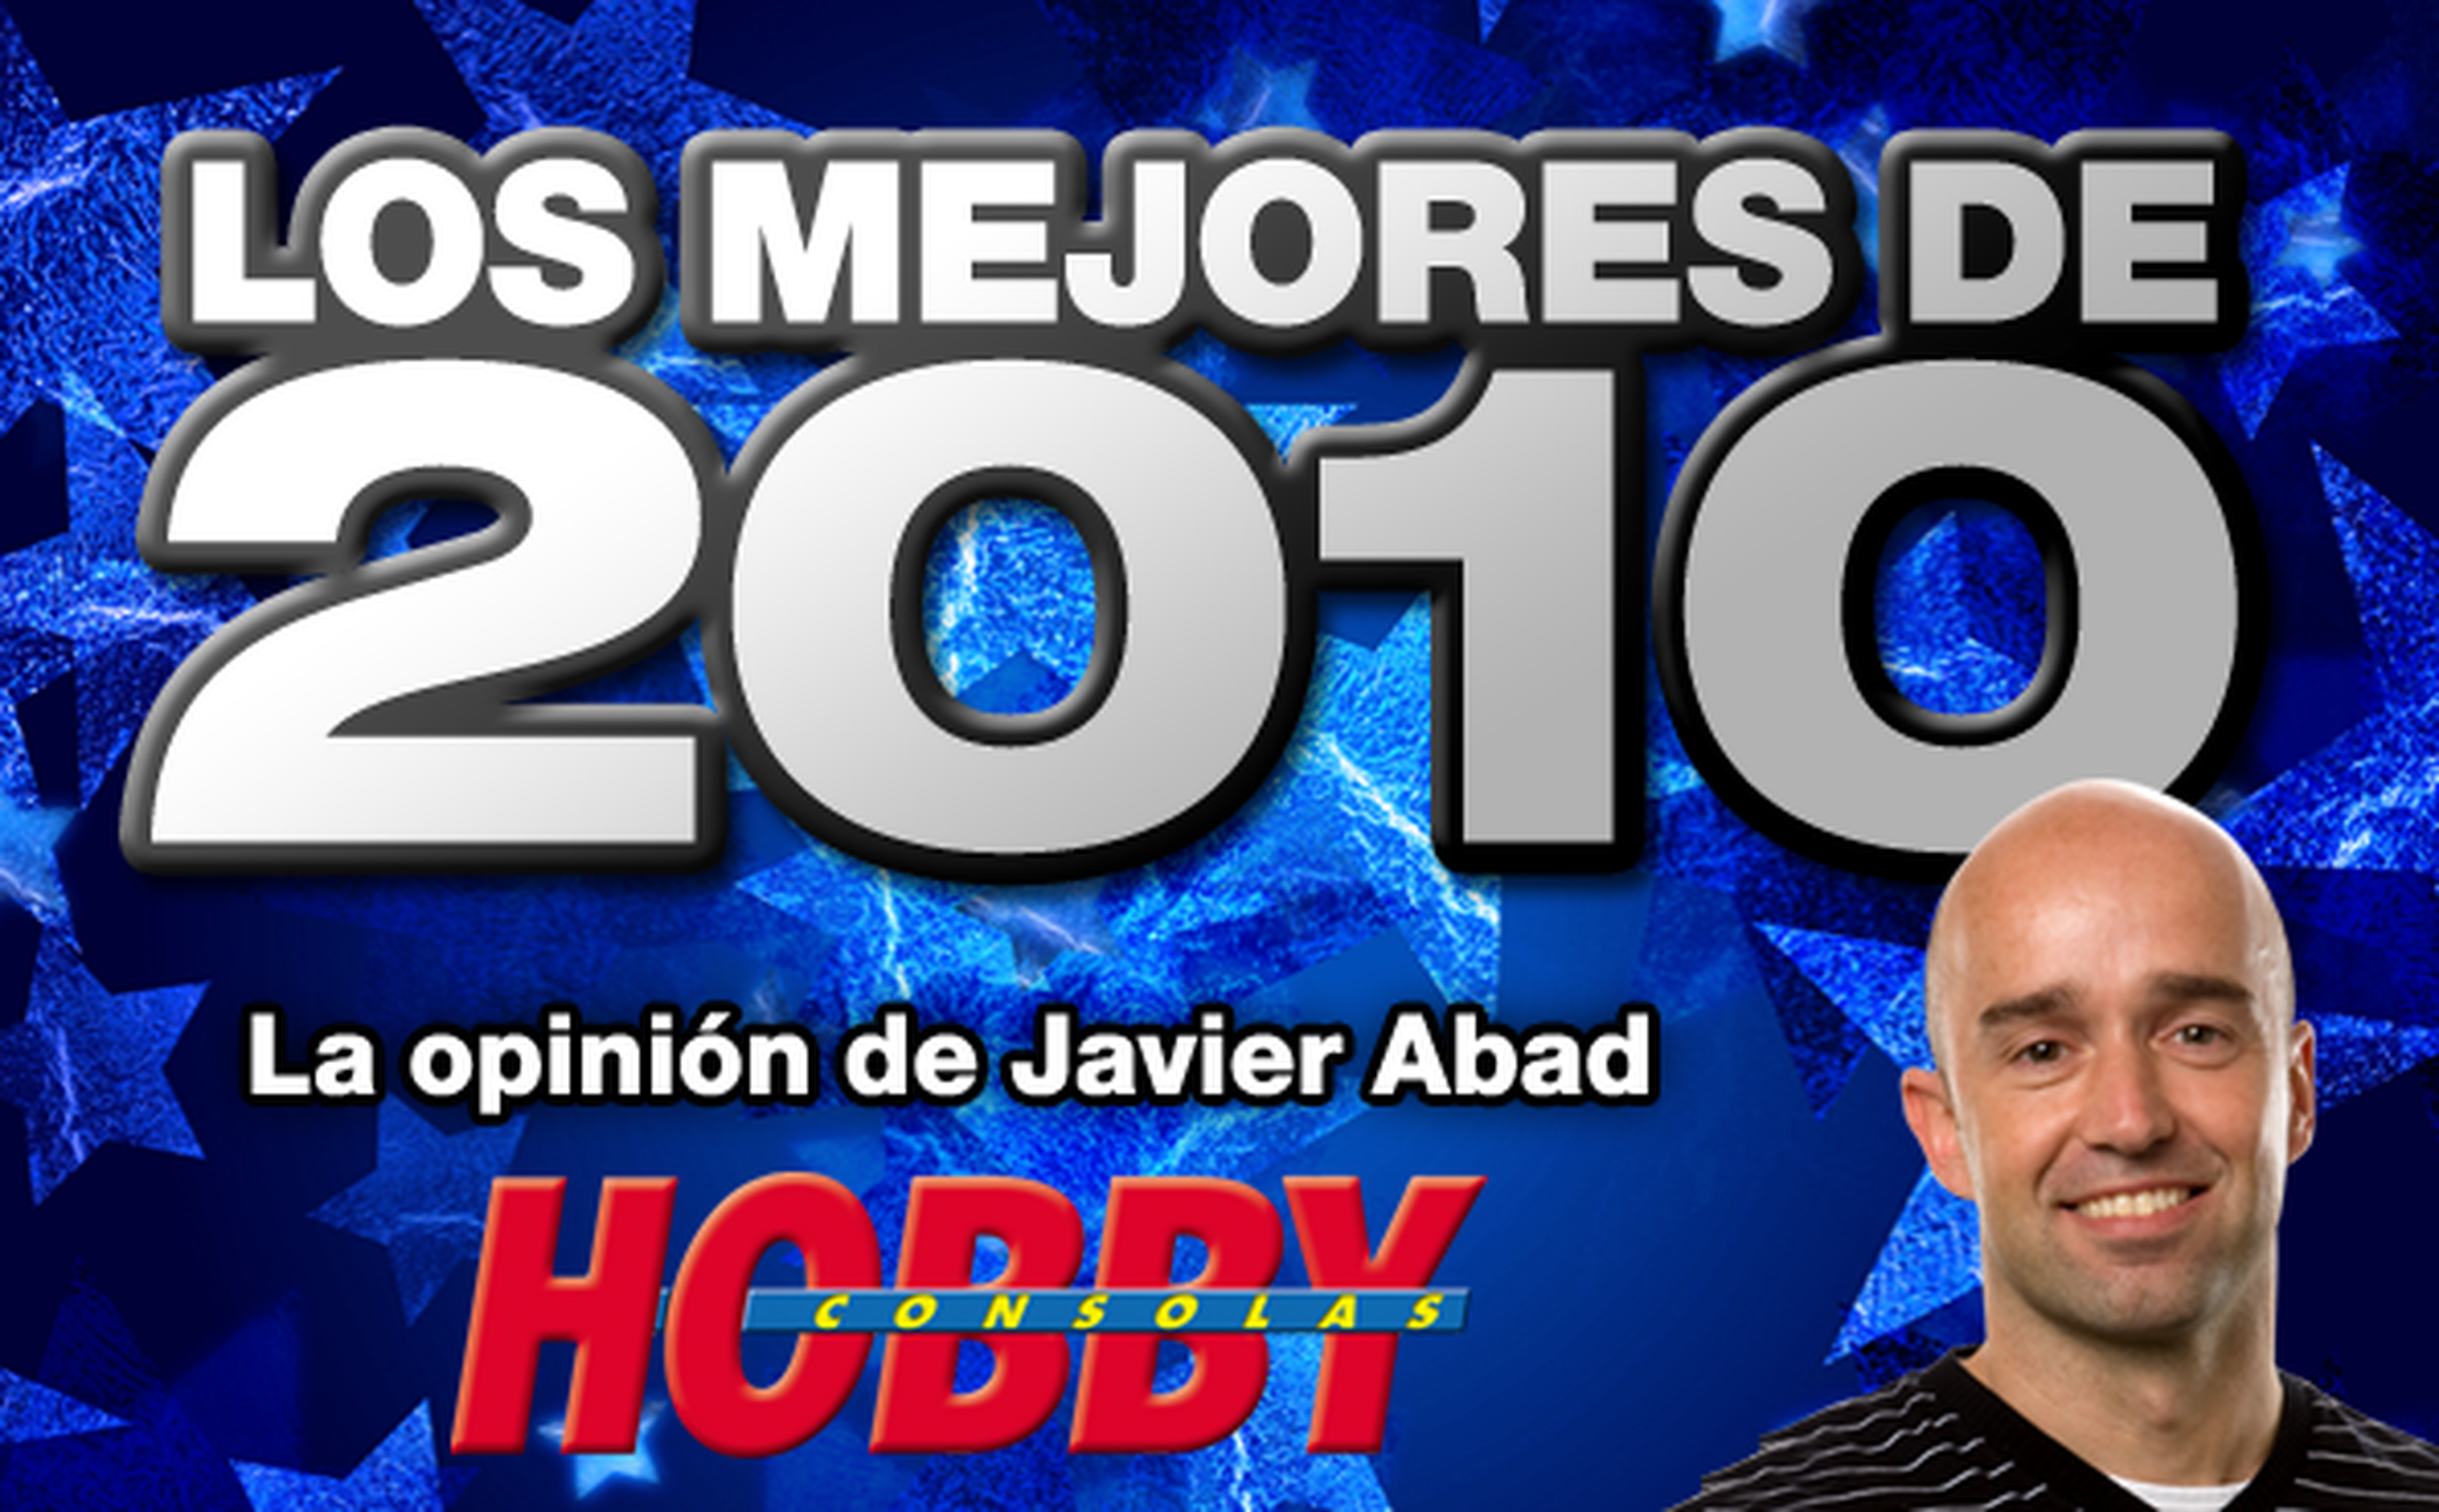 Los mejores de 2010: Javier Abad